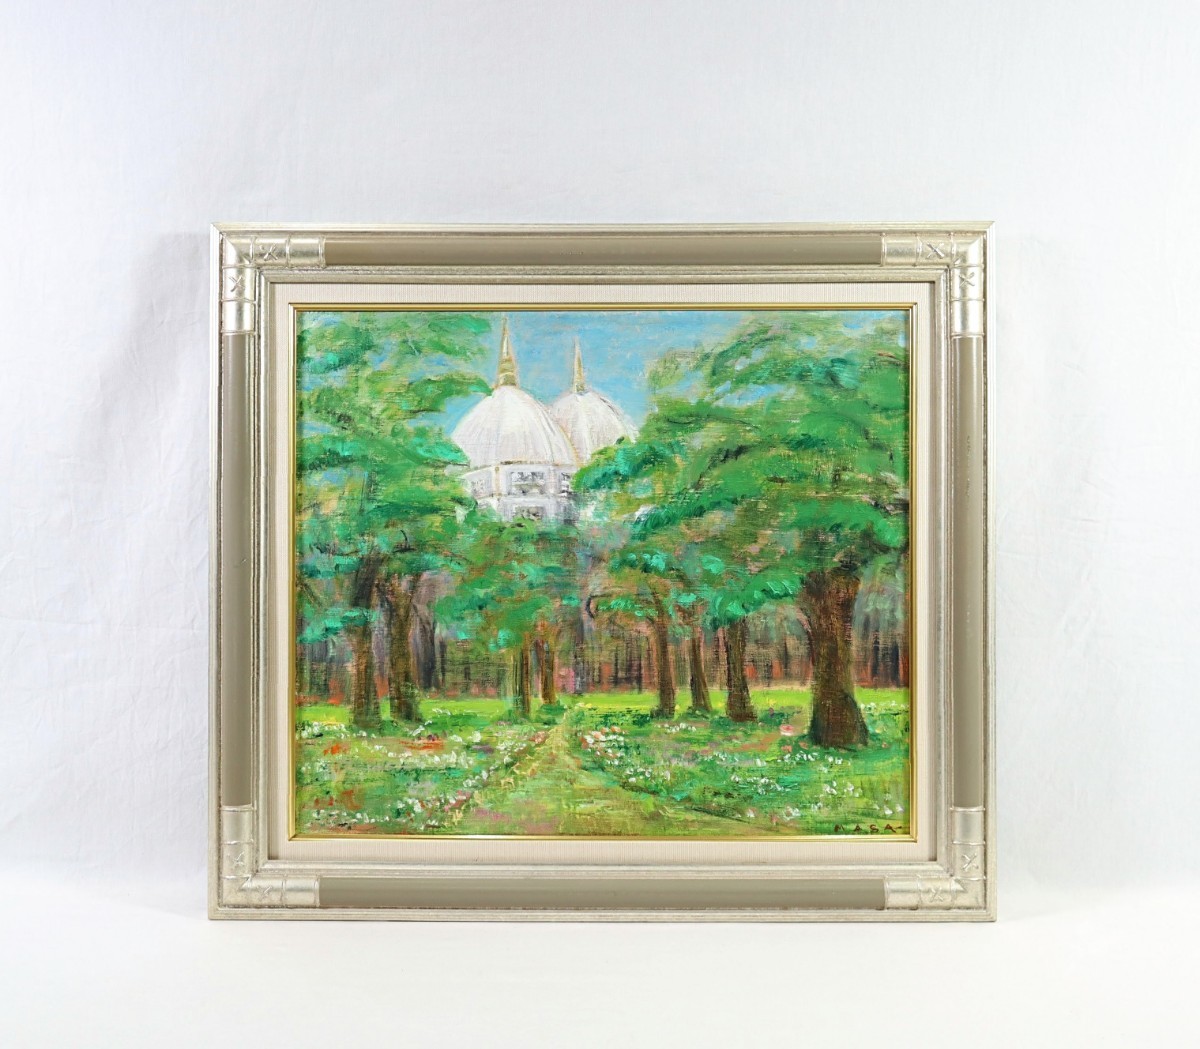 Echtes Werk von Masako Fukumoto Ölgemälde Aus dem Park, England Größe F10 Mitglied der Shunyo-kai Studierte bei Haru Miyawaki Ein Kreidekuppeldach, das durch die Lücken im frischen grünen Wald lugt 7877, Malerei, Ölgemälde, Natur, Landschaftsmalerei